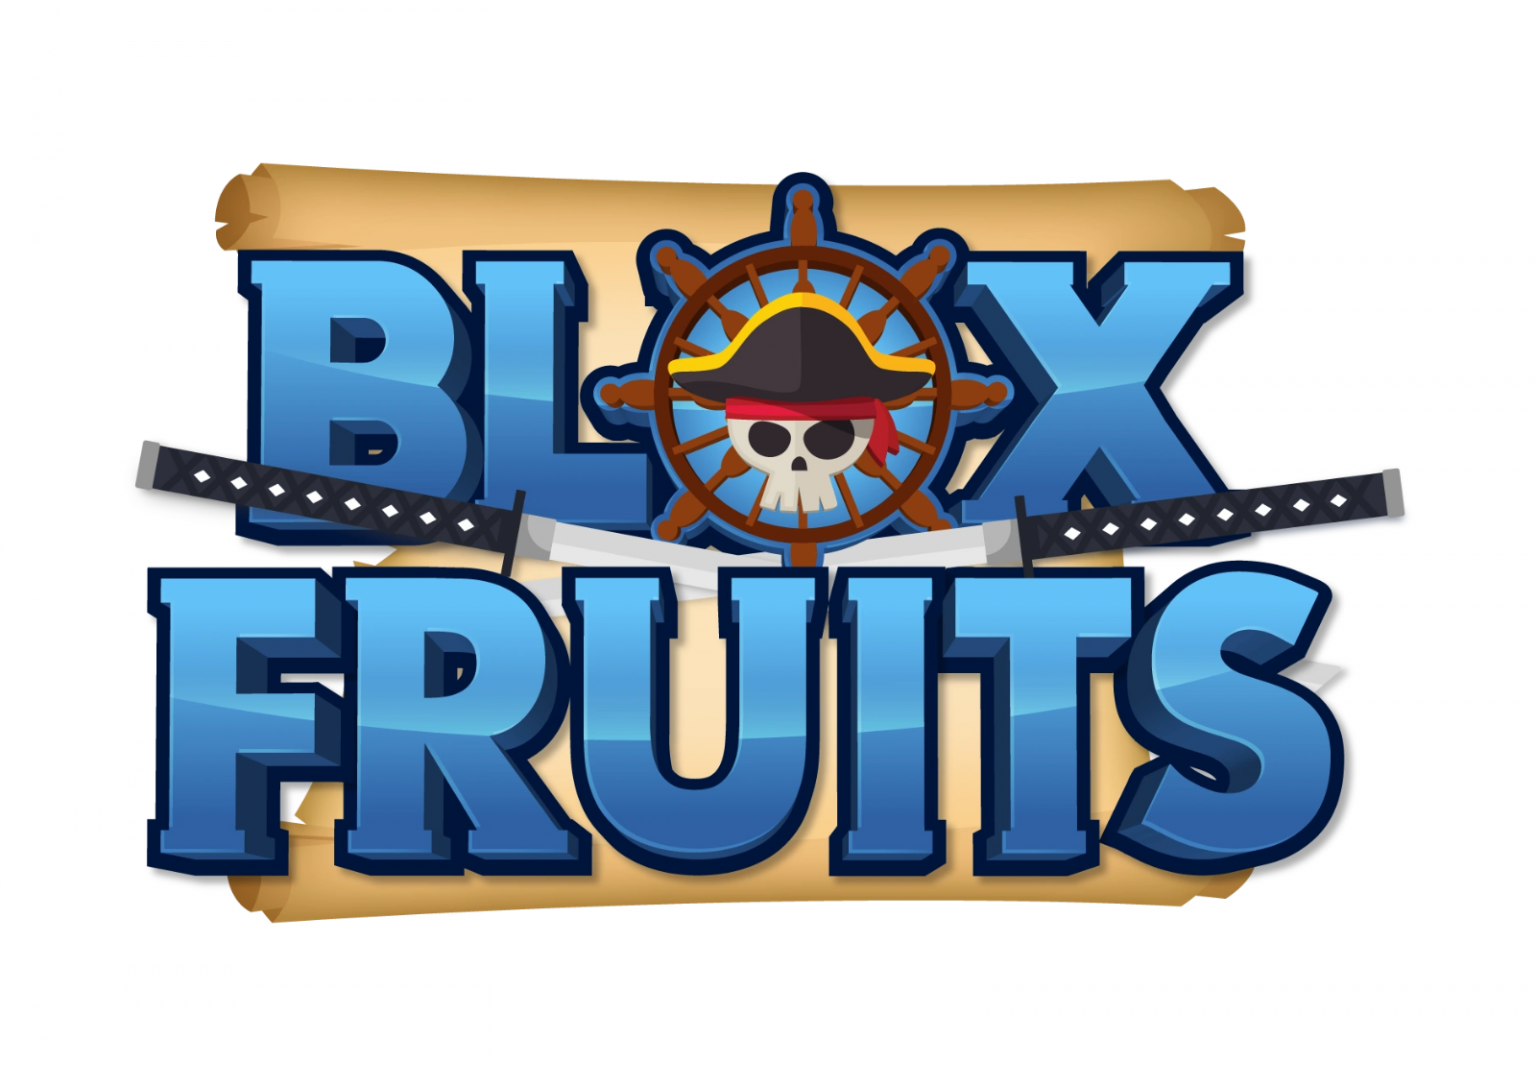 BLOX Fruits. РОБЛОКС BLOX Fruits. BLOX Fruits фрукты. Логотип Блокс фруит. Авы блокс фрукт